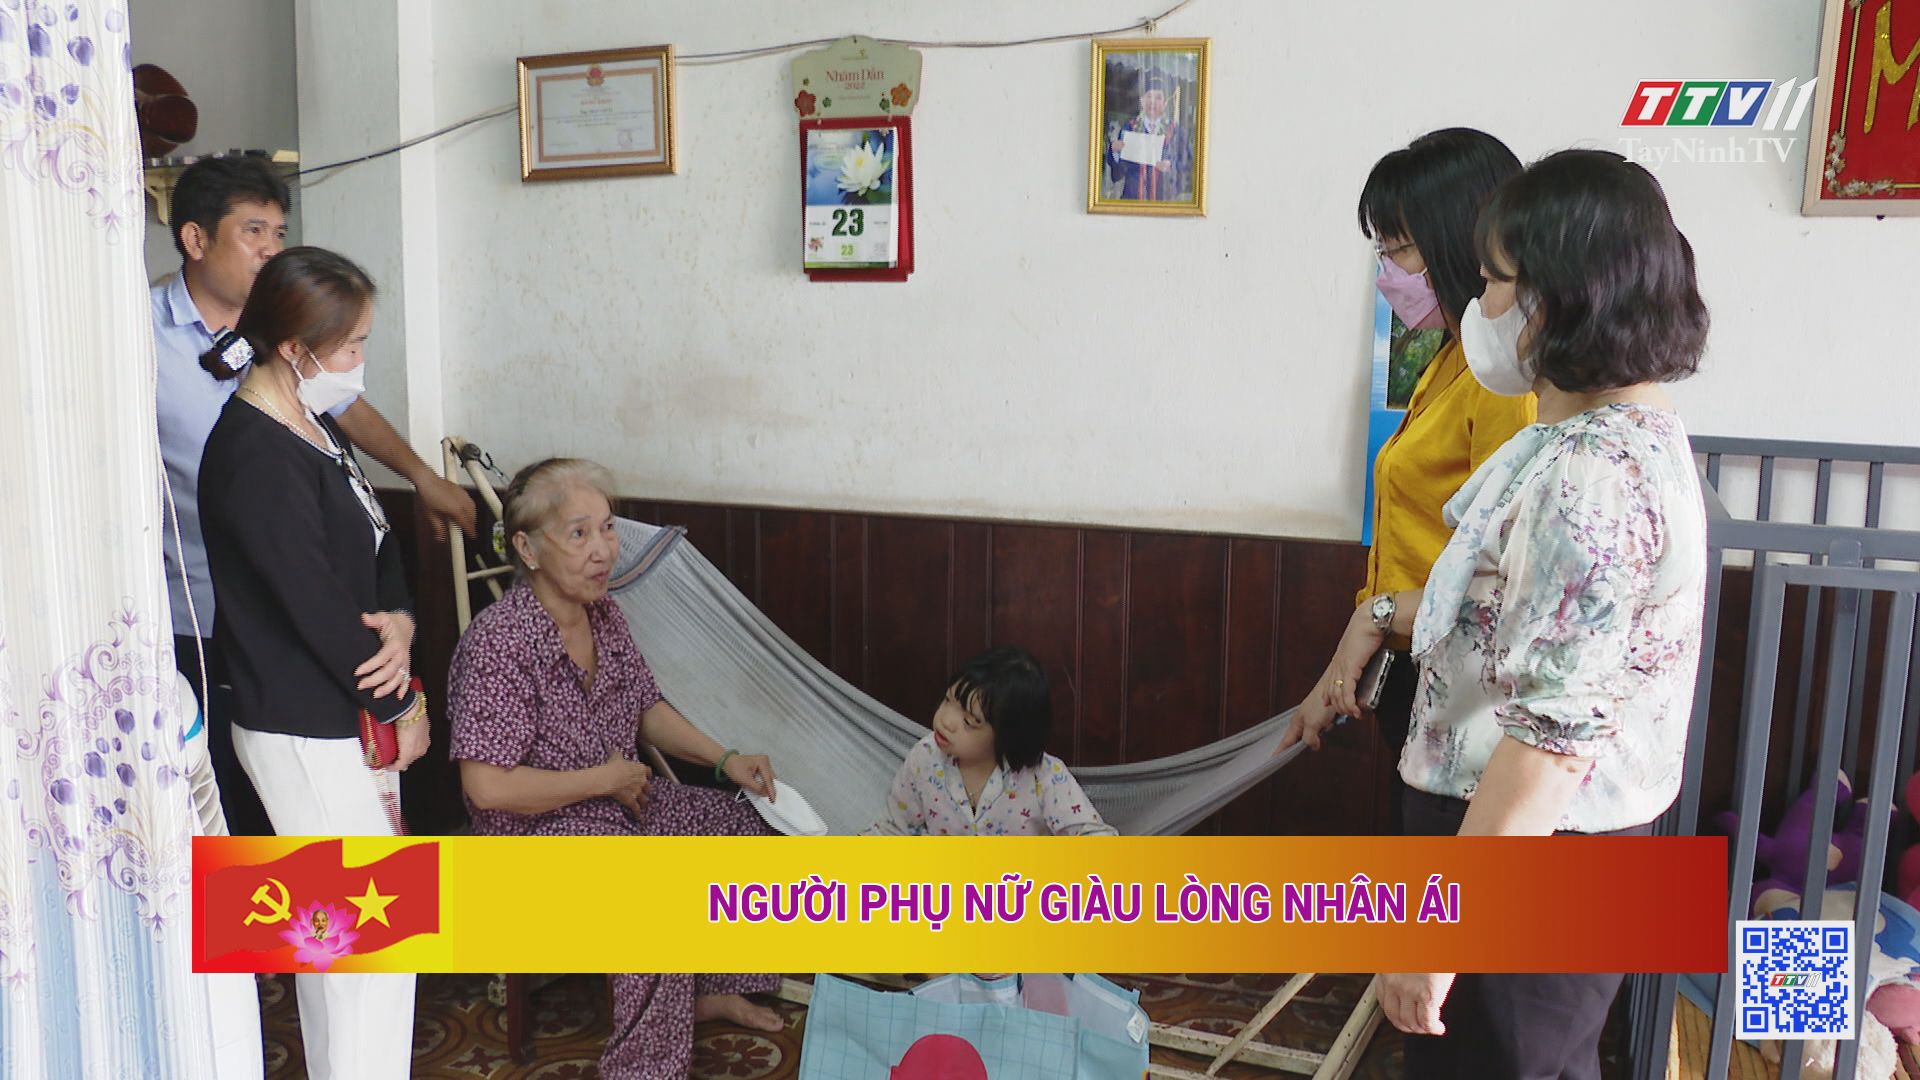 Người phụ nữ giàu lòng nhân ái | Học tập và làm theo tư tưởng, đạo đức, phong cách Hồ Chí Minh | TayNinhTV